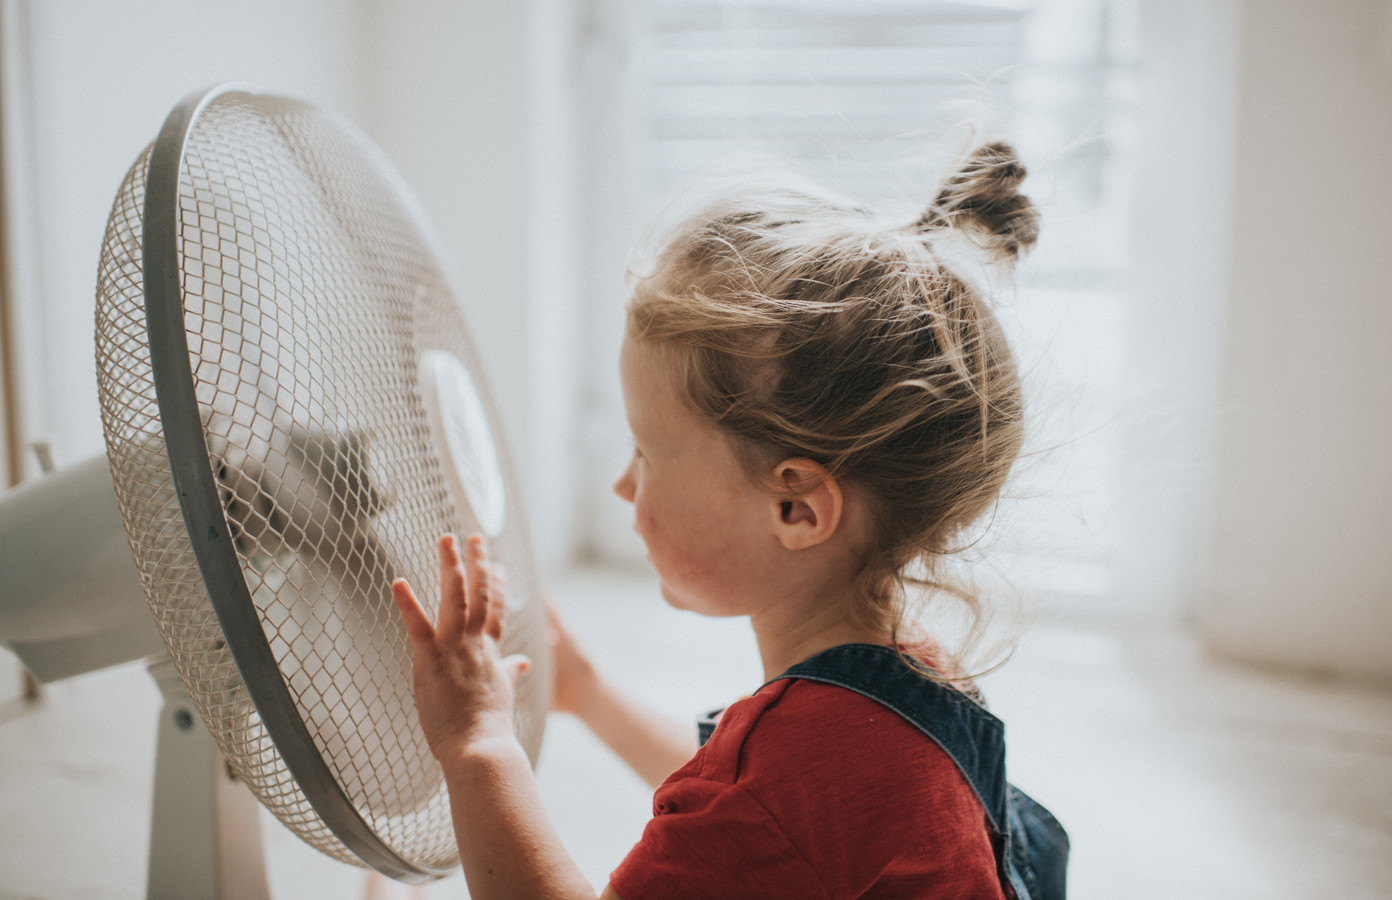 rijm Portiek haag Bespaar bergen energie en koop geen airco maar een ventilator: voelt net zo  comfortabel, is nu bewezen | Foto | gelderlander.nl